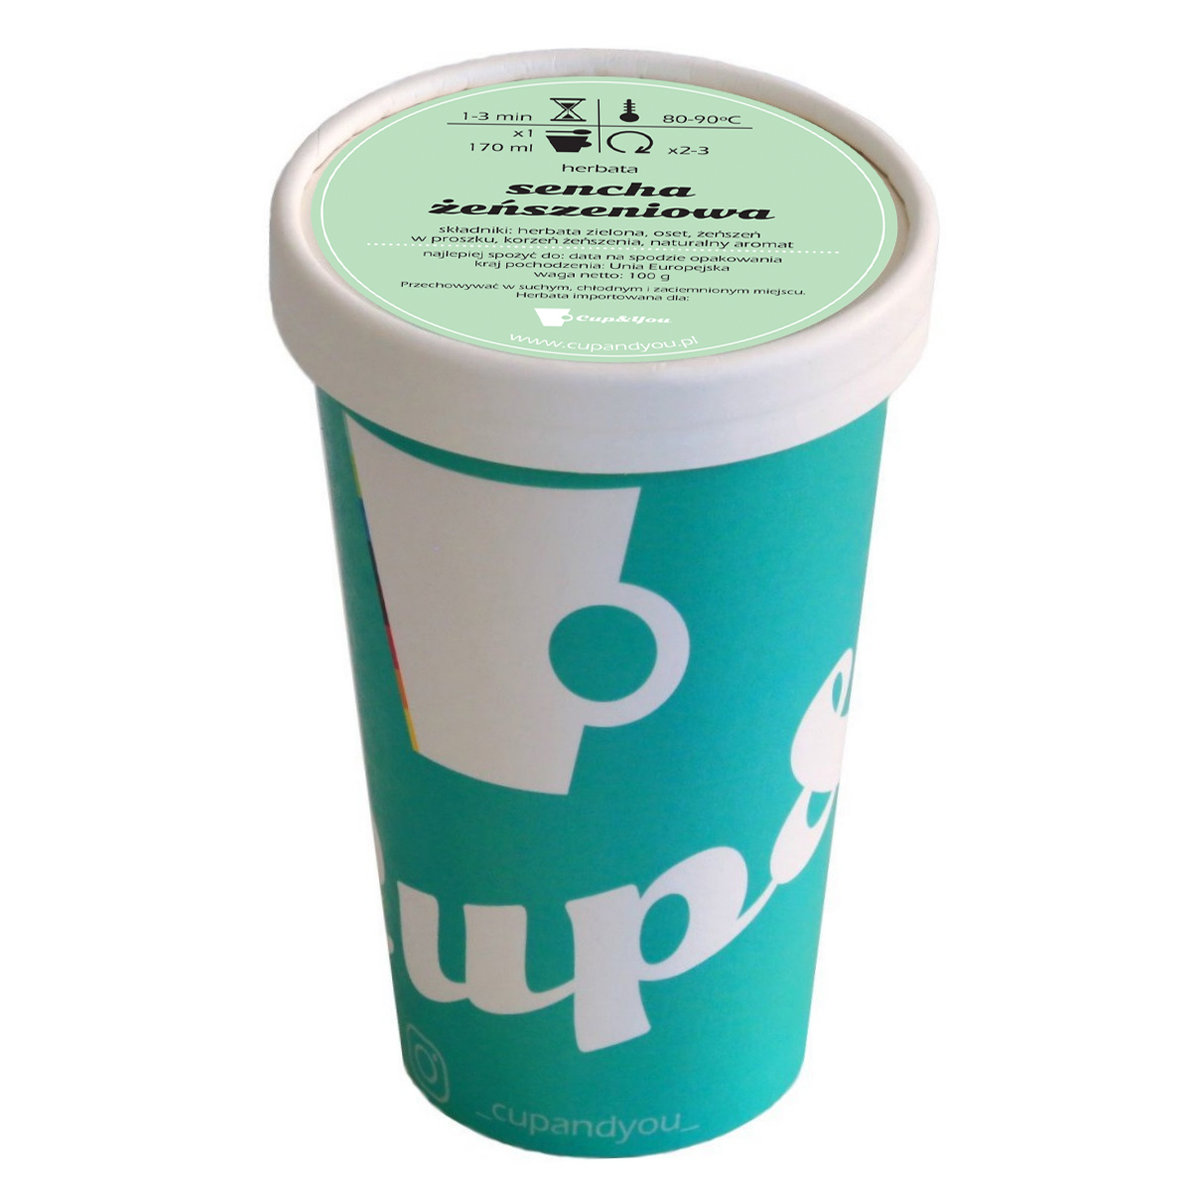 Herbata zielona smakowa CUP&YOU, sencha żeńszeniowa w EKO KUBKU, 100 g